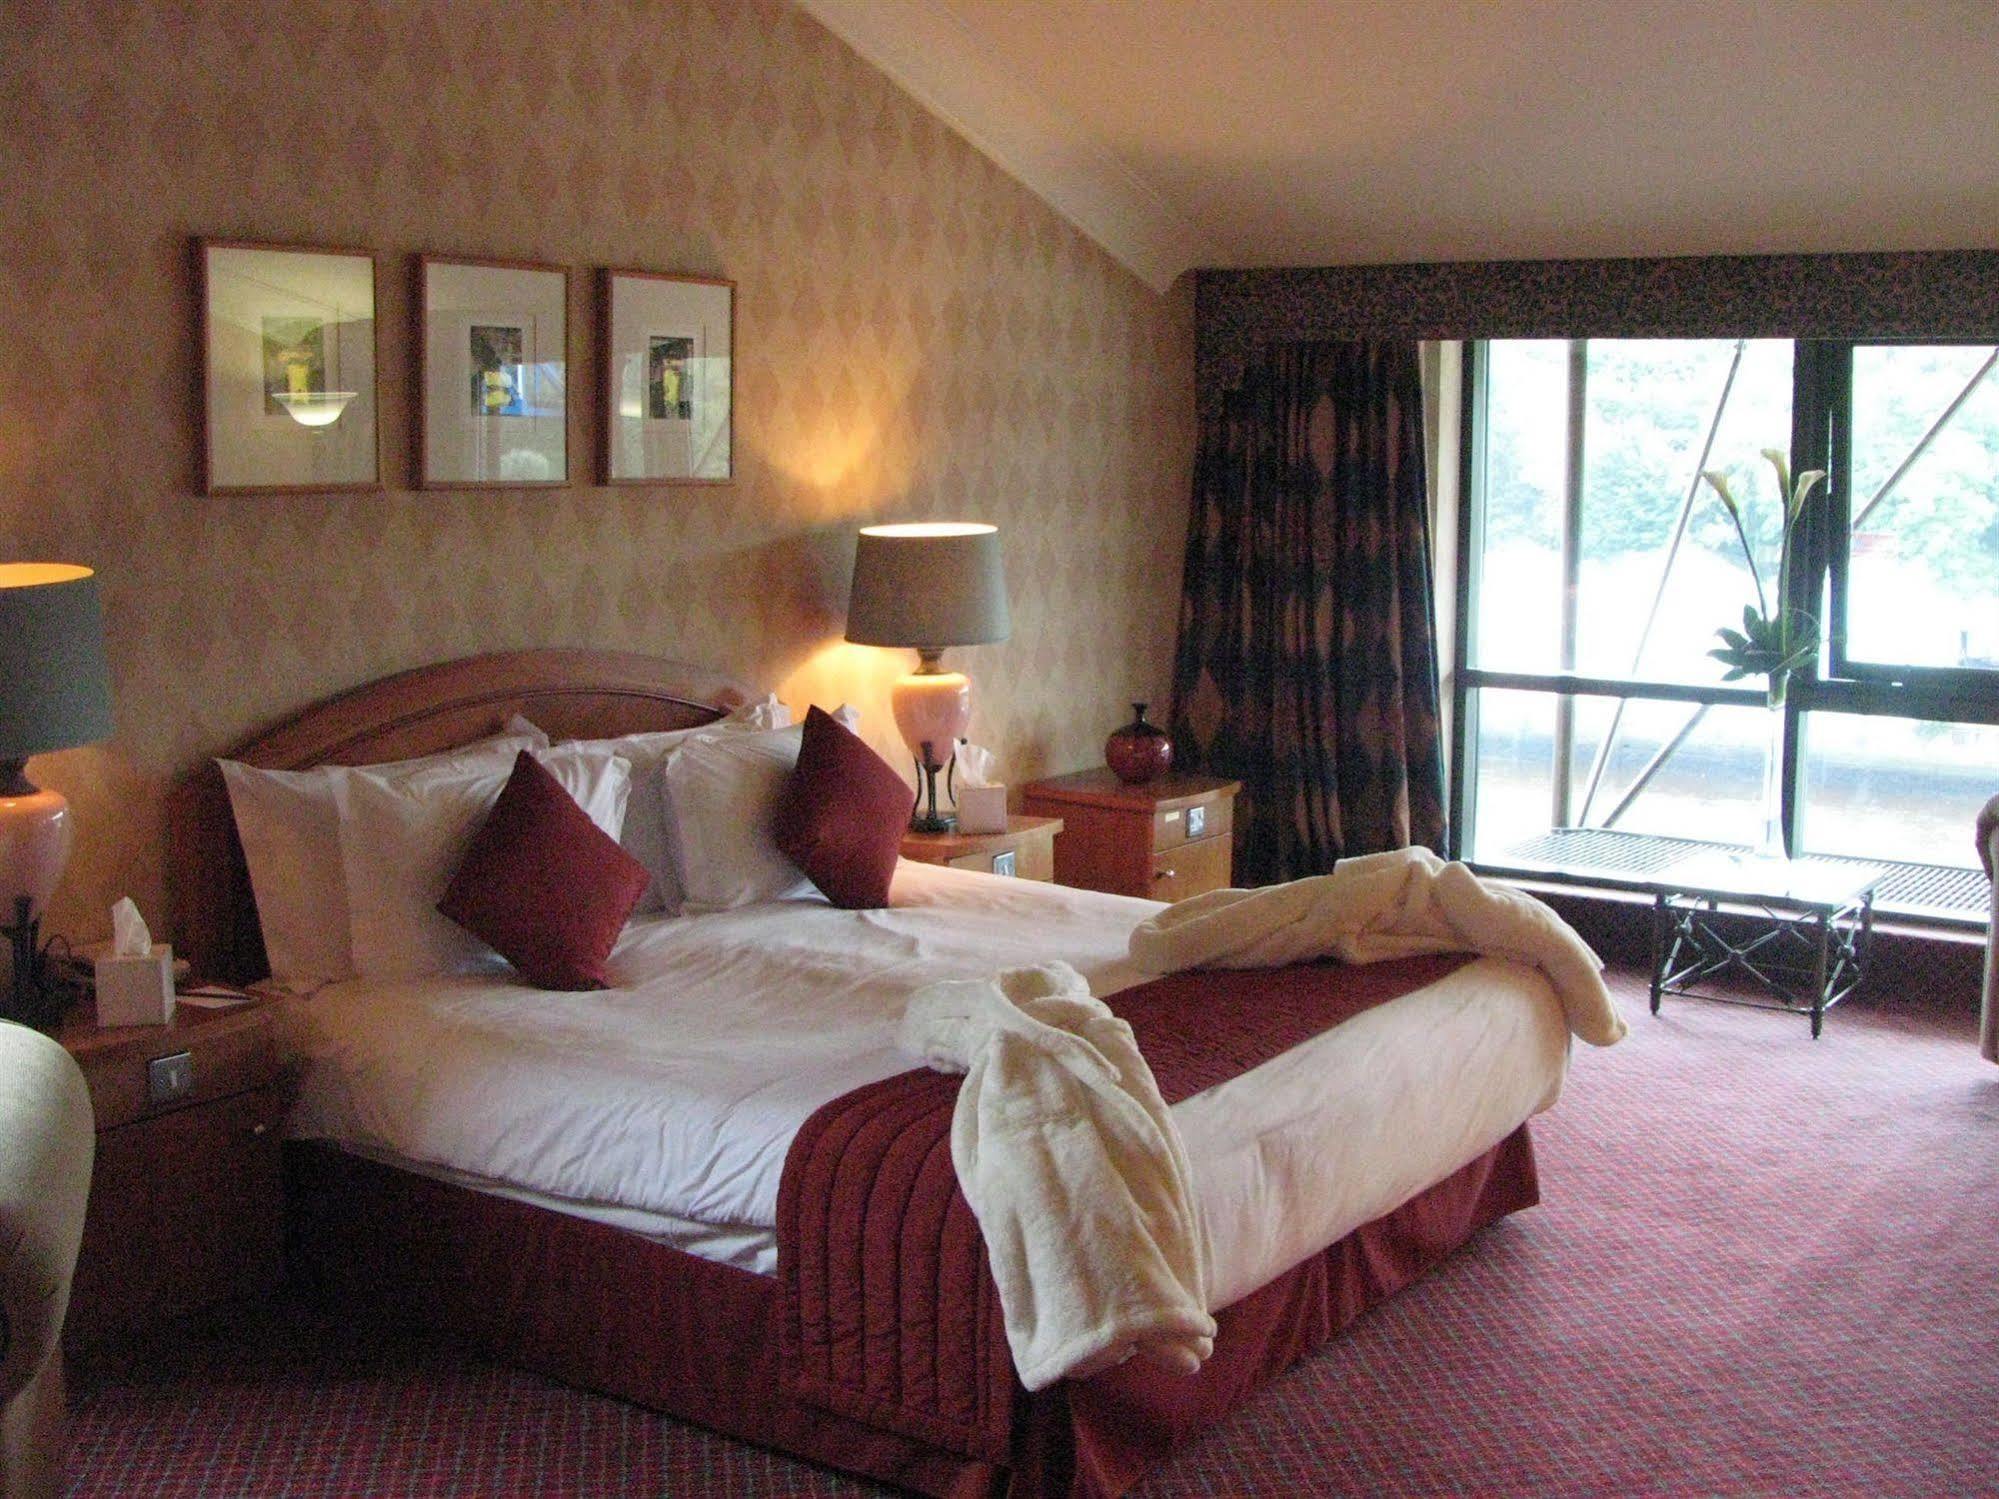 Copthorne Hotel Newcastle Extérieur photo